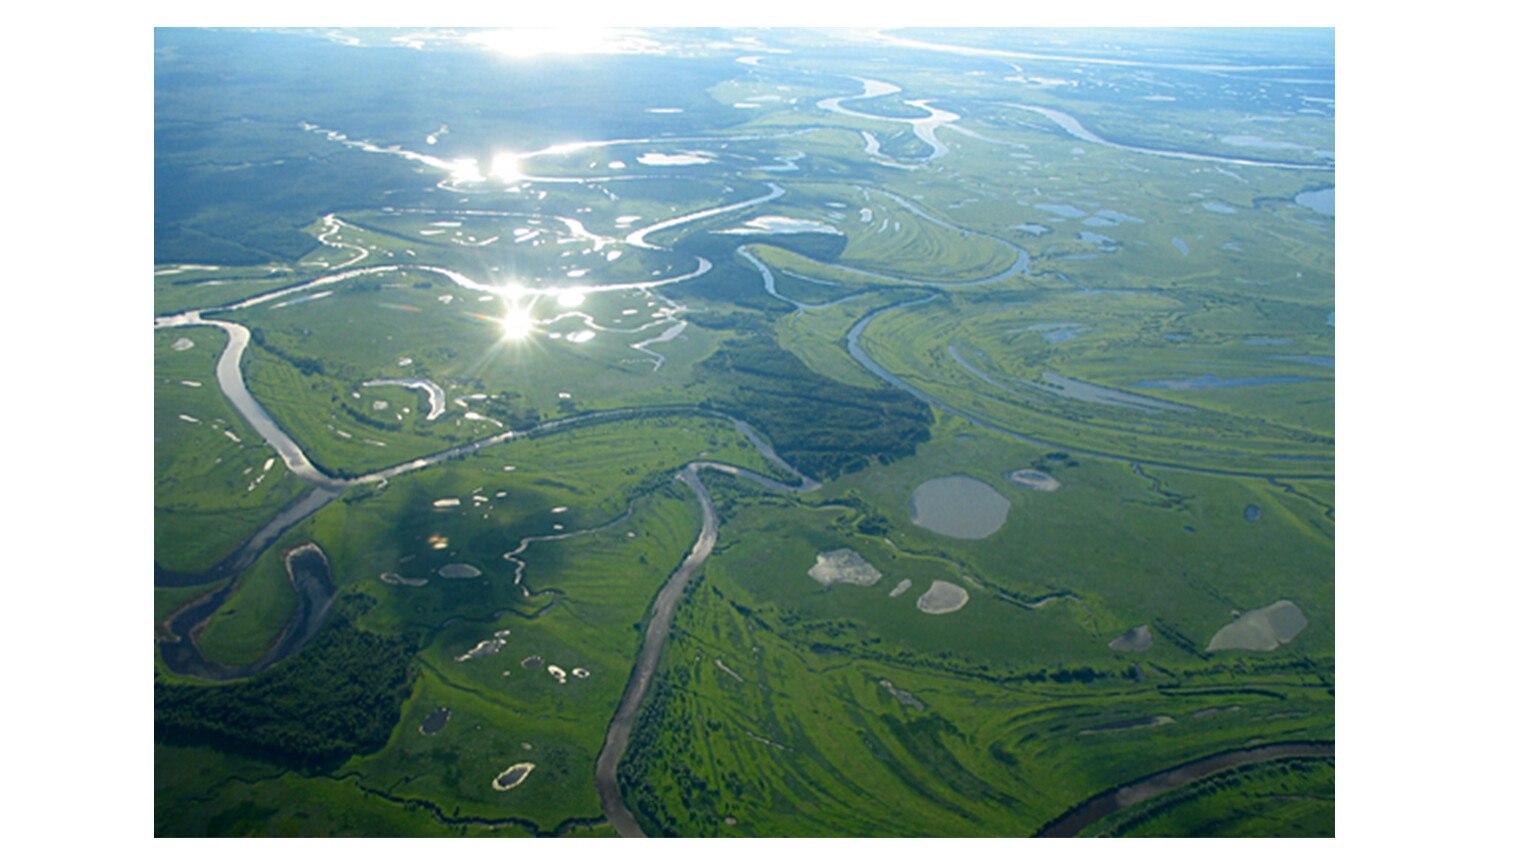 Самая крупная река западно сибирской равнины. Турсунтский туман озеро. Озеро Турсунтский туман ХМАО. Западно Сибирская равнина Обь. Реки Западно сибирской равнины.